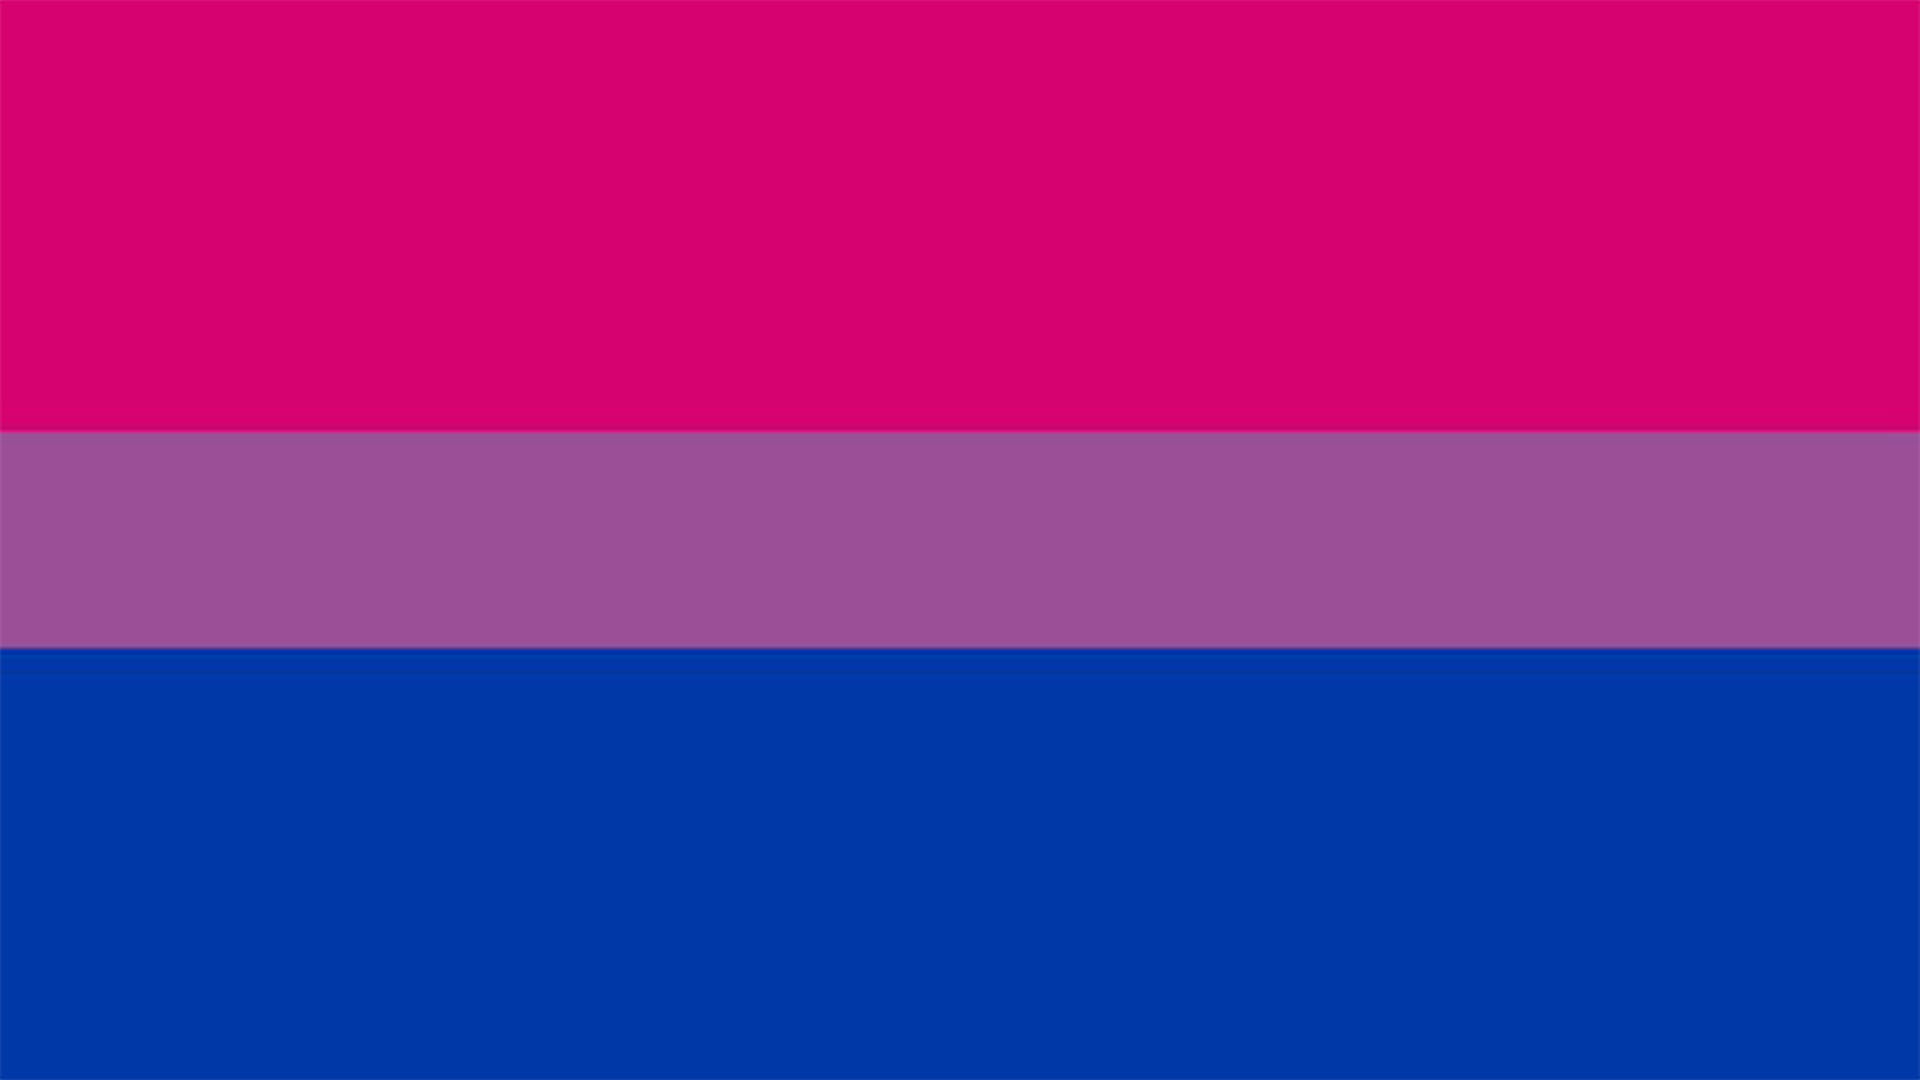 En la bandera el rosa representa la homosexualidad, el azul representa la heterosexualidad y el púrpura es la atracción por ambos géneros (Foto: Twitter@vergaloca)